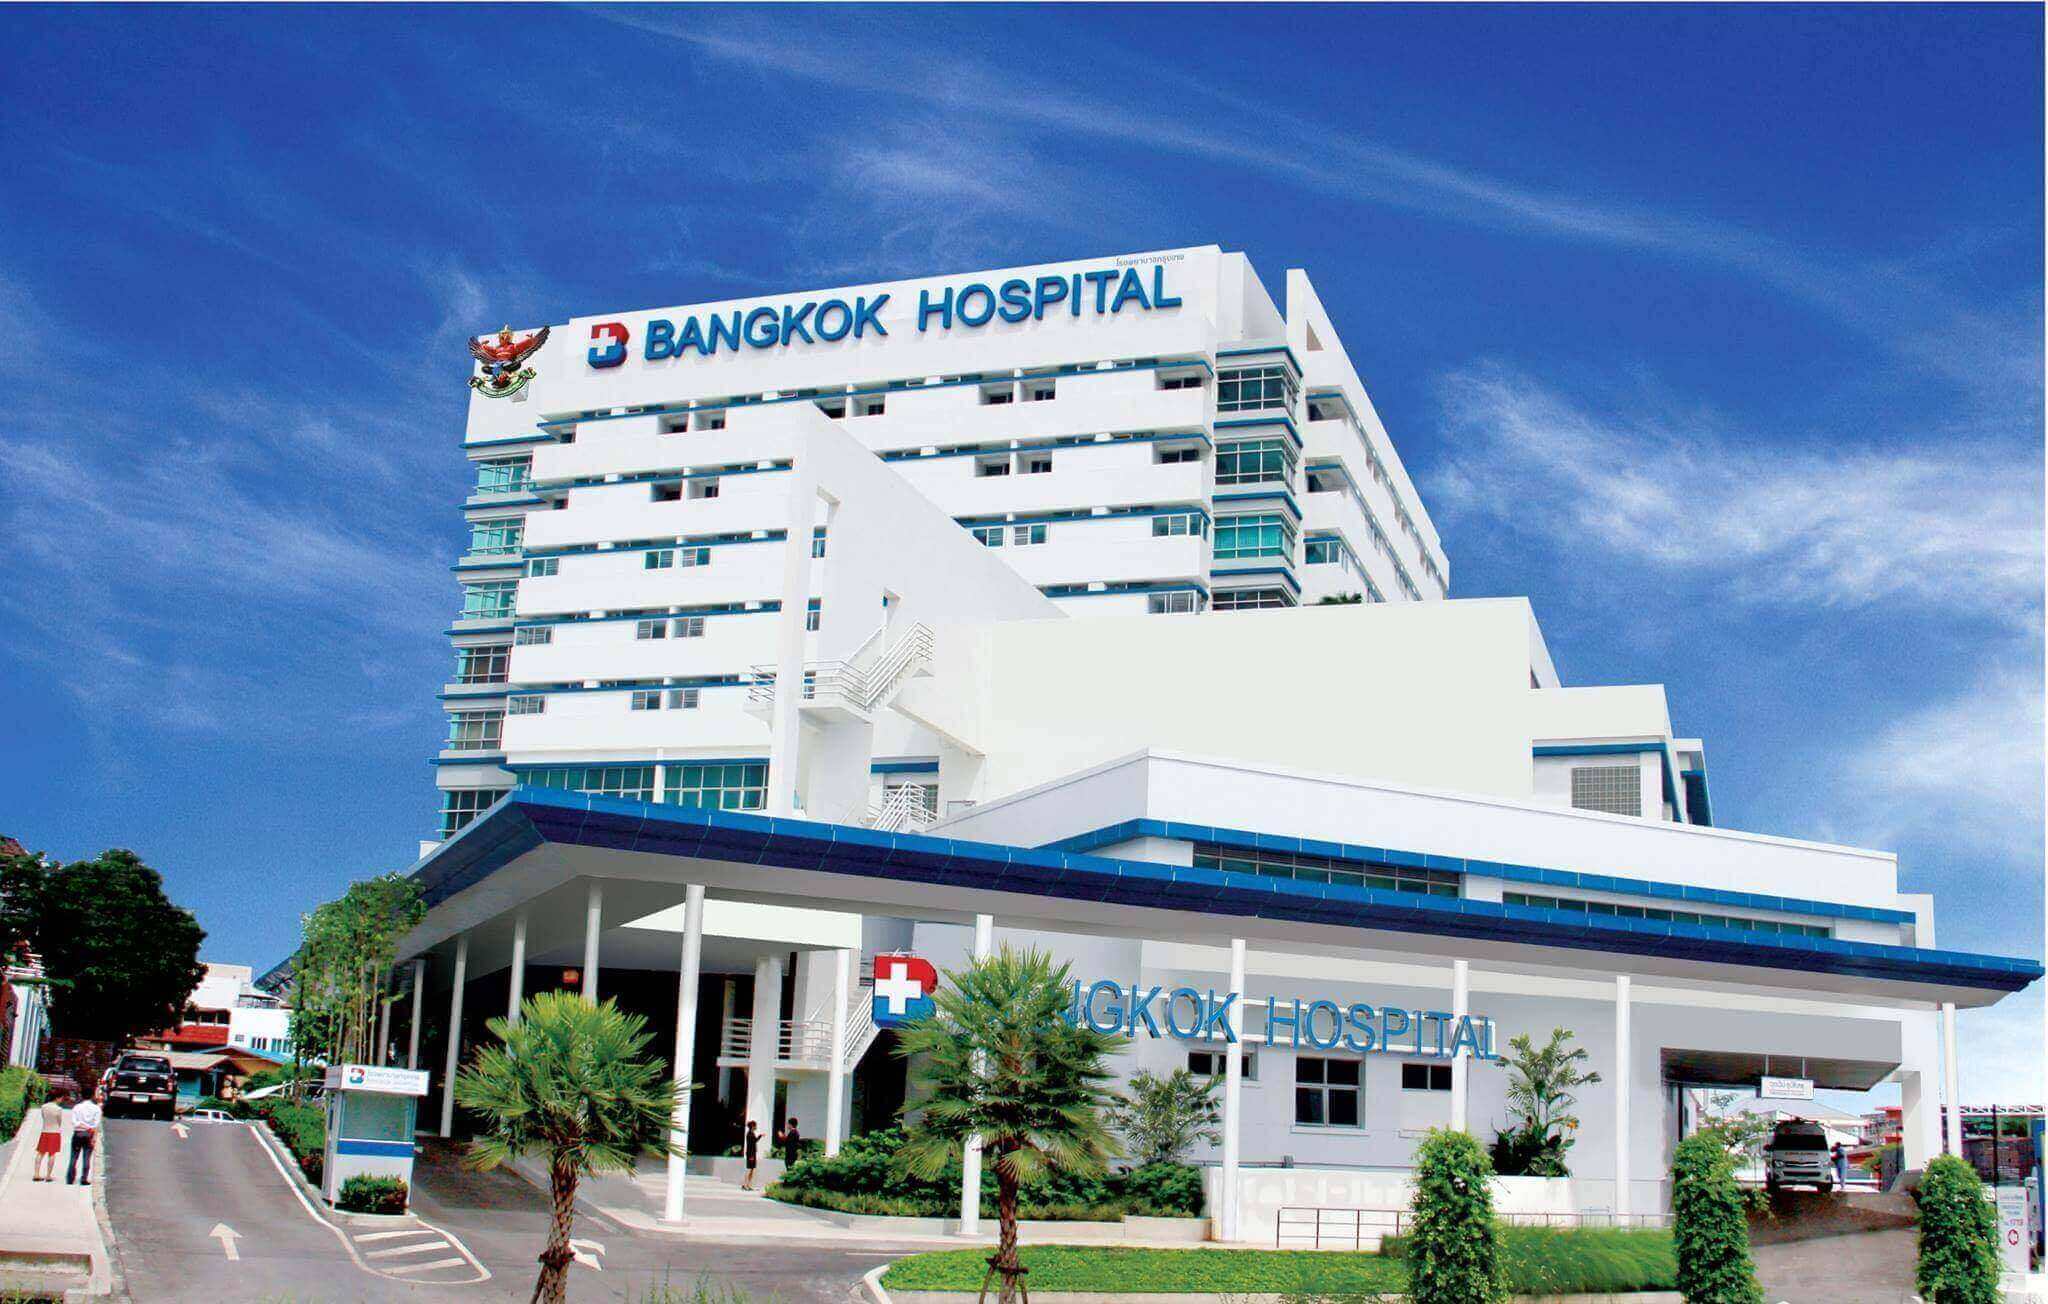 Bangkok hospital udon thani